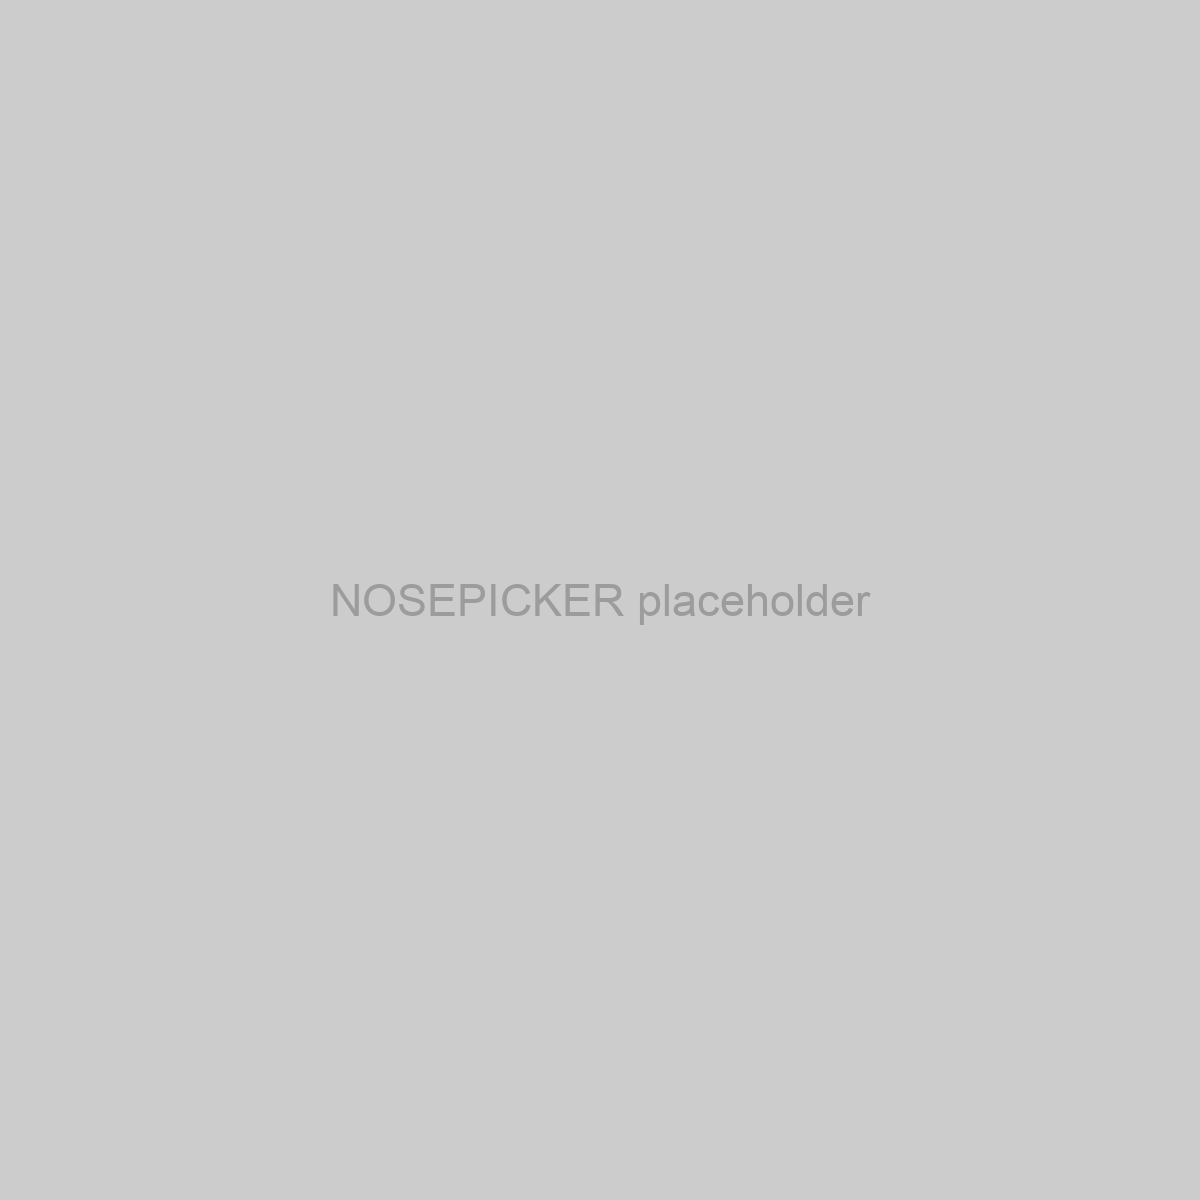 NOSEPICKER Placeholder Image